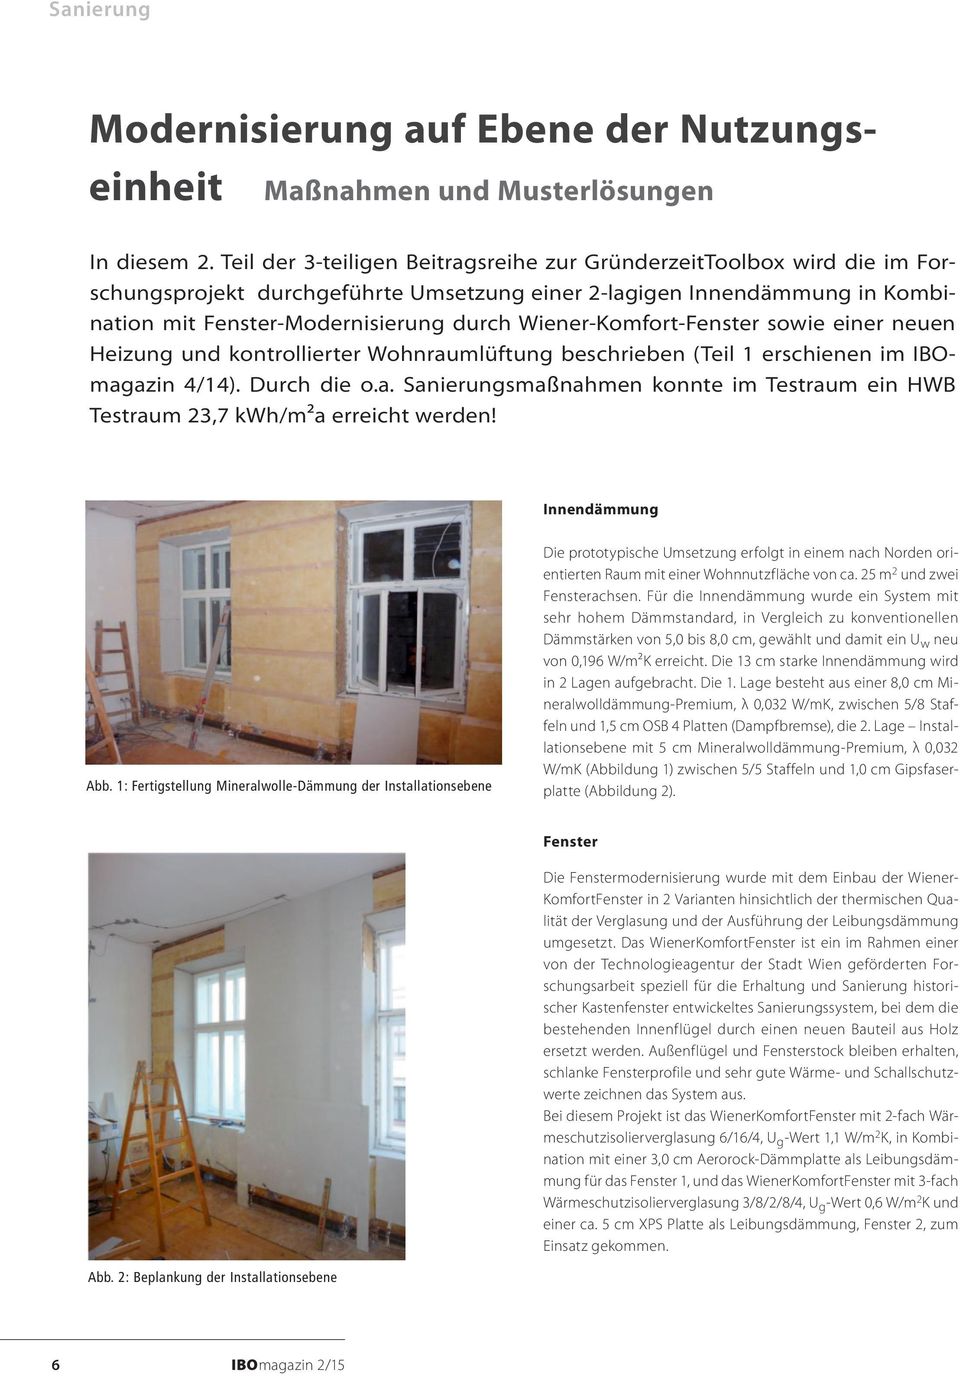 Wiener-Komfort-Fenster sowie einer neuen Heizung und kontrollierter Wohnraumlüftung beschrieben (Teil 1 erschienen im IBOmagazin 4/14). Durch die o.a. Sanierungsmaßnahmen konnte im Testraum ein HWB Testraum 23,7 kwh/m²a erreicht werden!